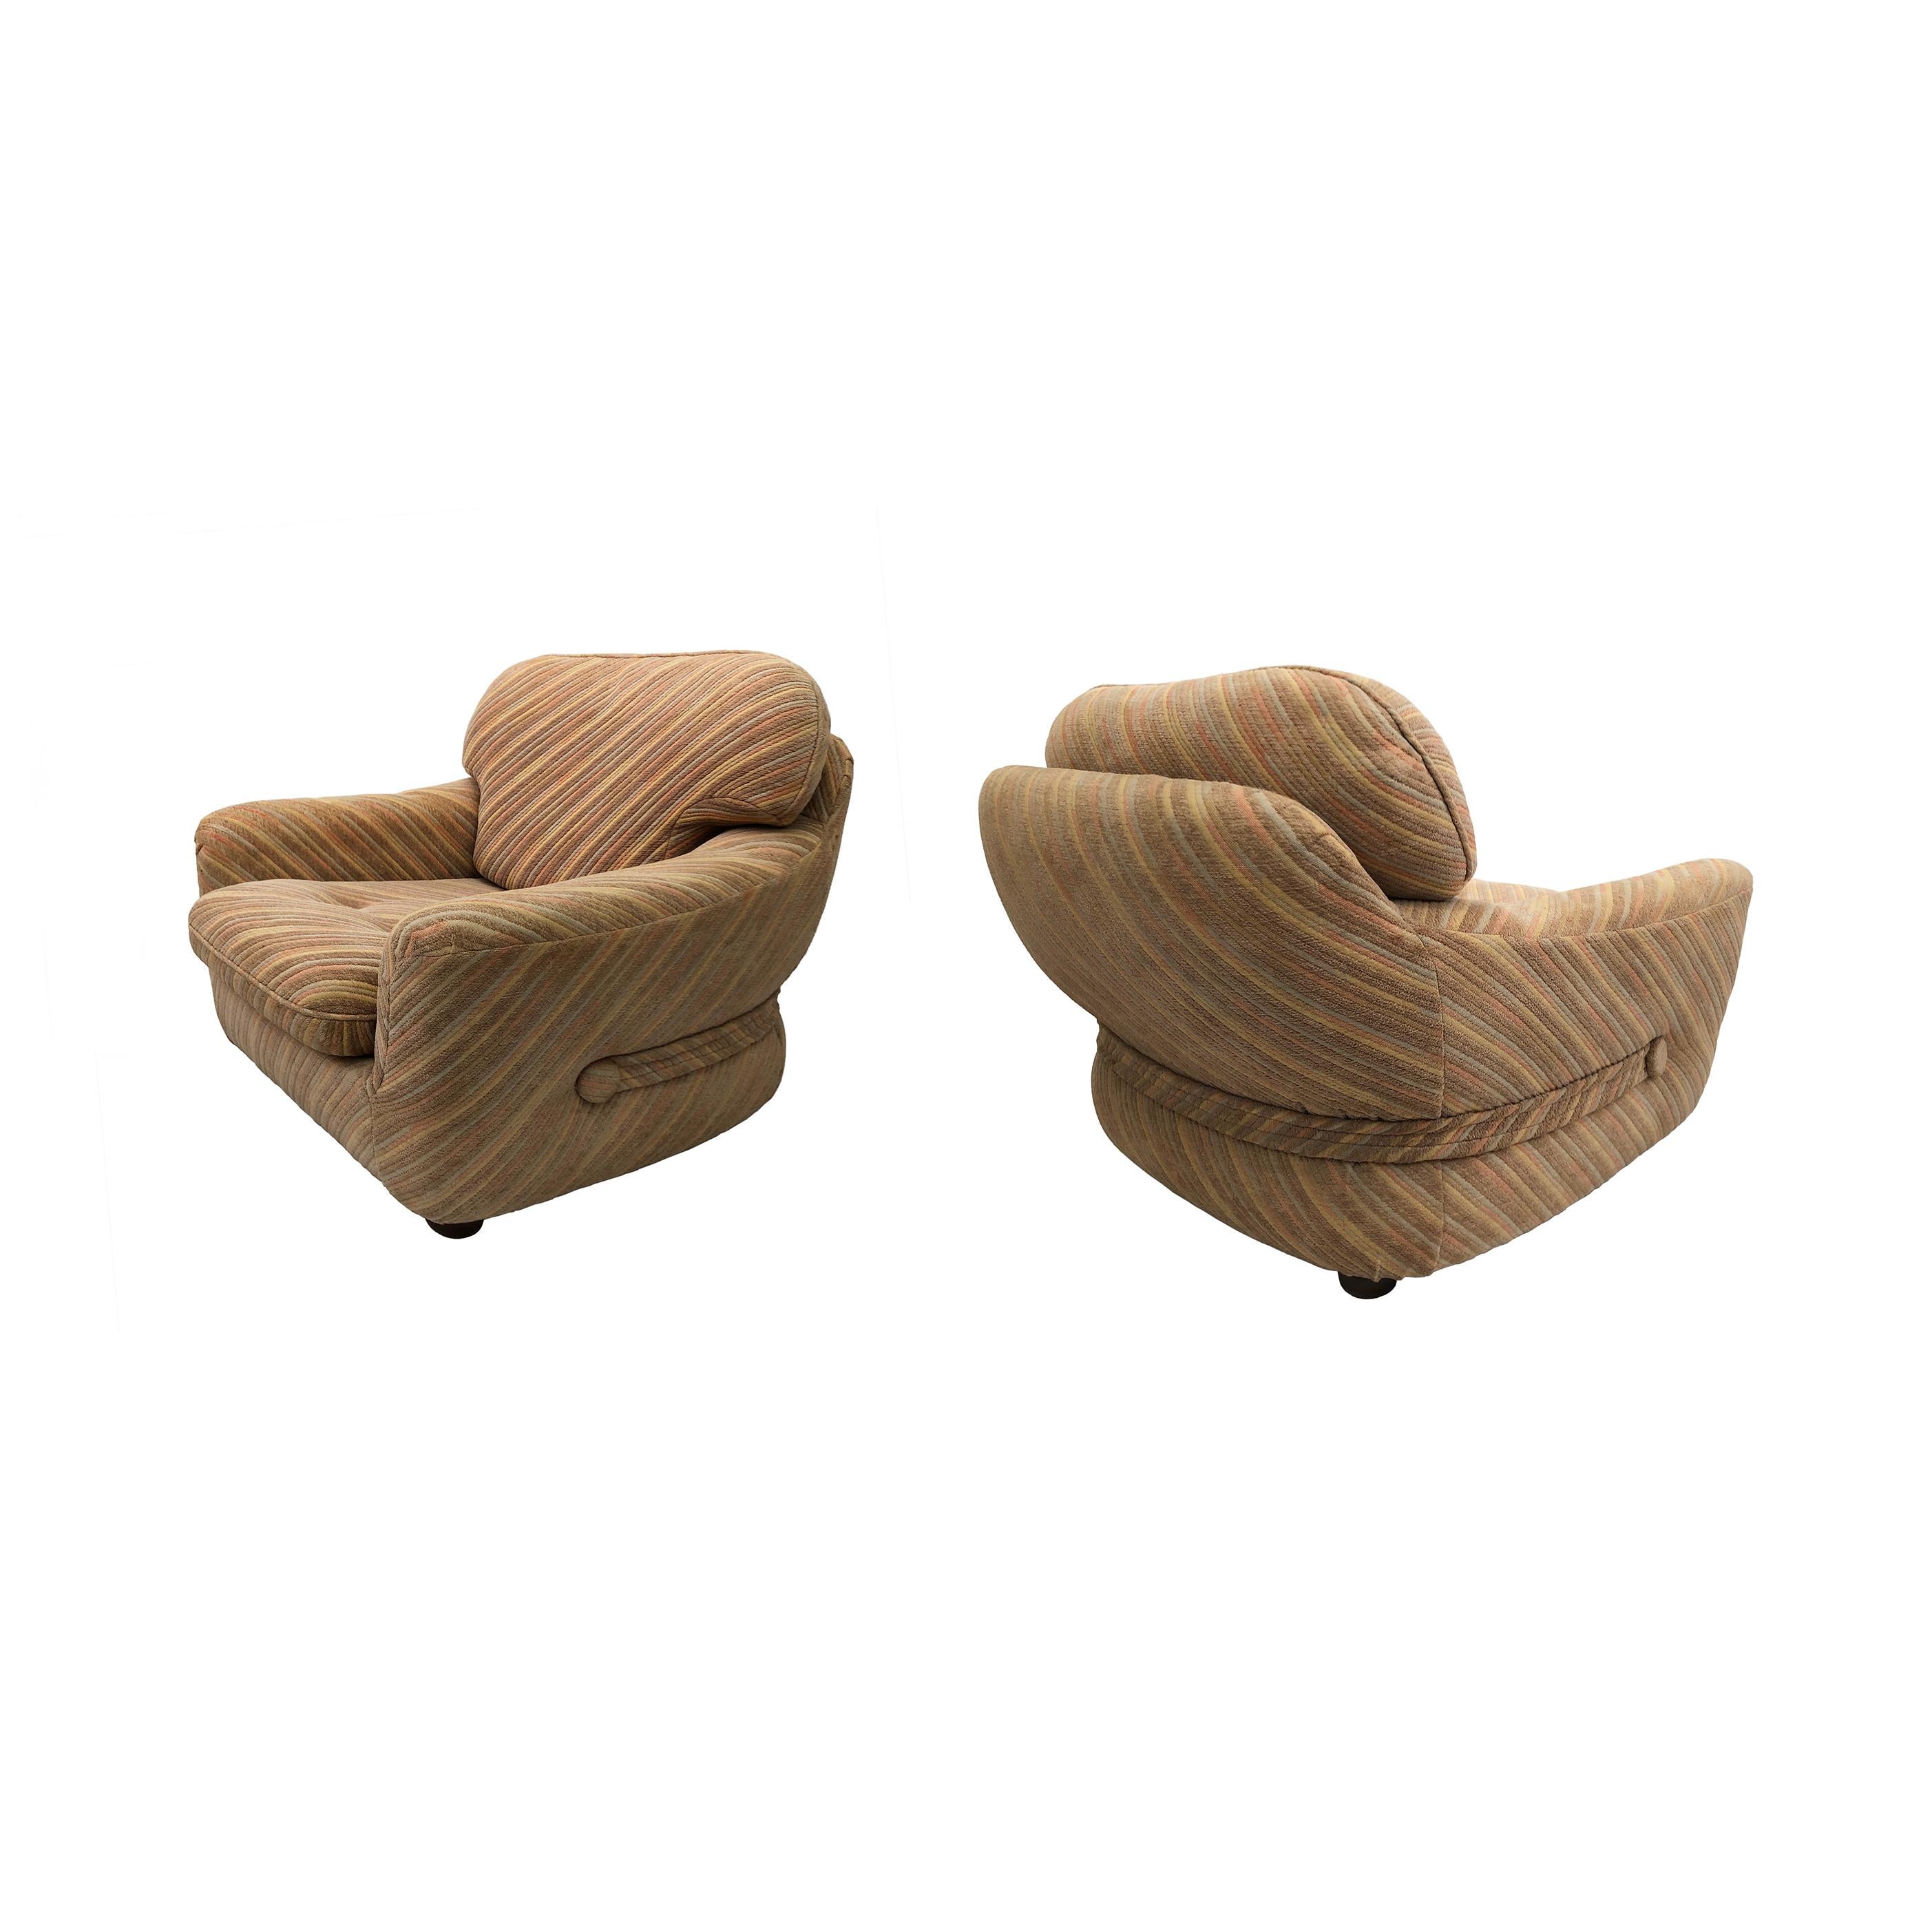 Ce fauteuil de salon super confortable, originaire d'Italie dans les années 1970, est une pièce intemporelle du design des sièges européens. Tapissé par l'indépendant Zorzi d'Uggiate-Trevano, près de Milan, dans un magnifique motif pastel - avec des